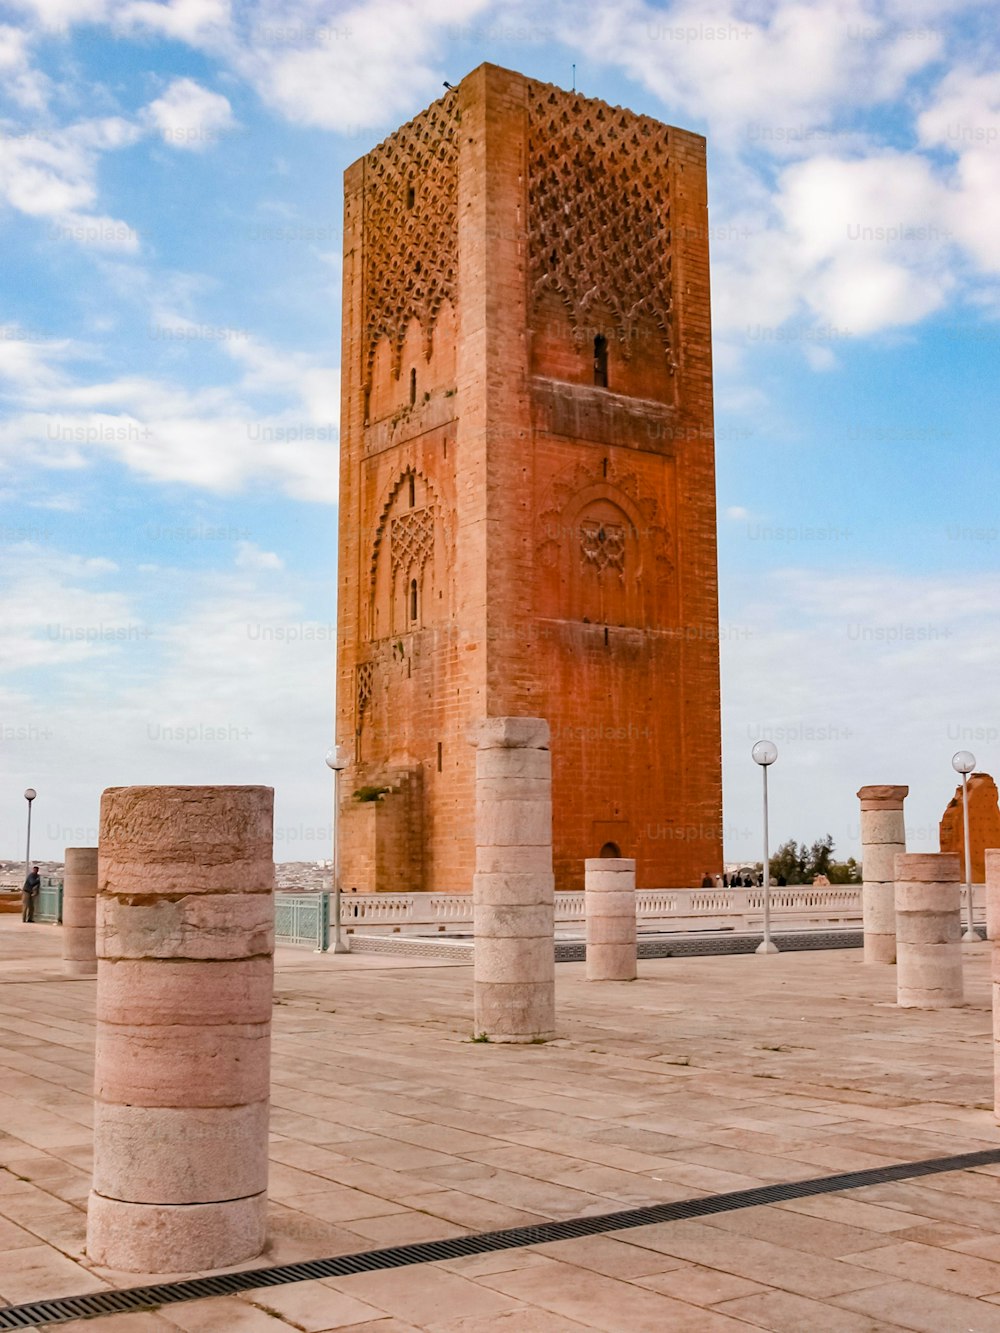 모로코 라바트에 있는 Tour Hassan 타워의 역사적 랜드마크를 세로로 찍은 사진